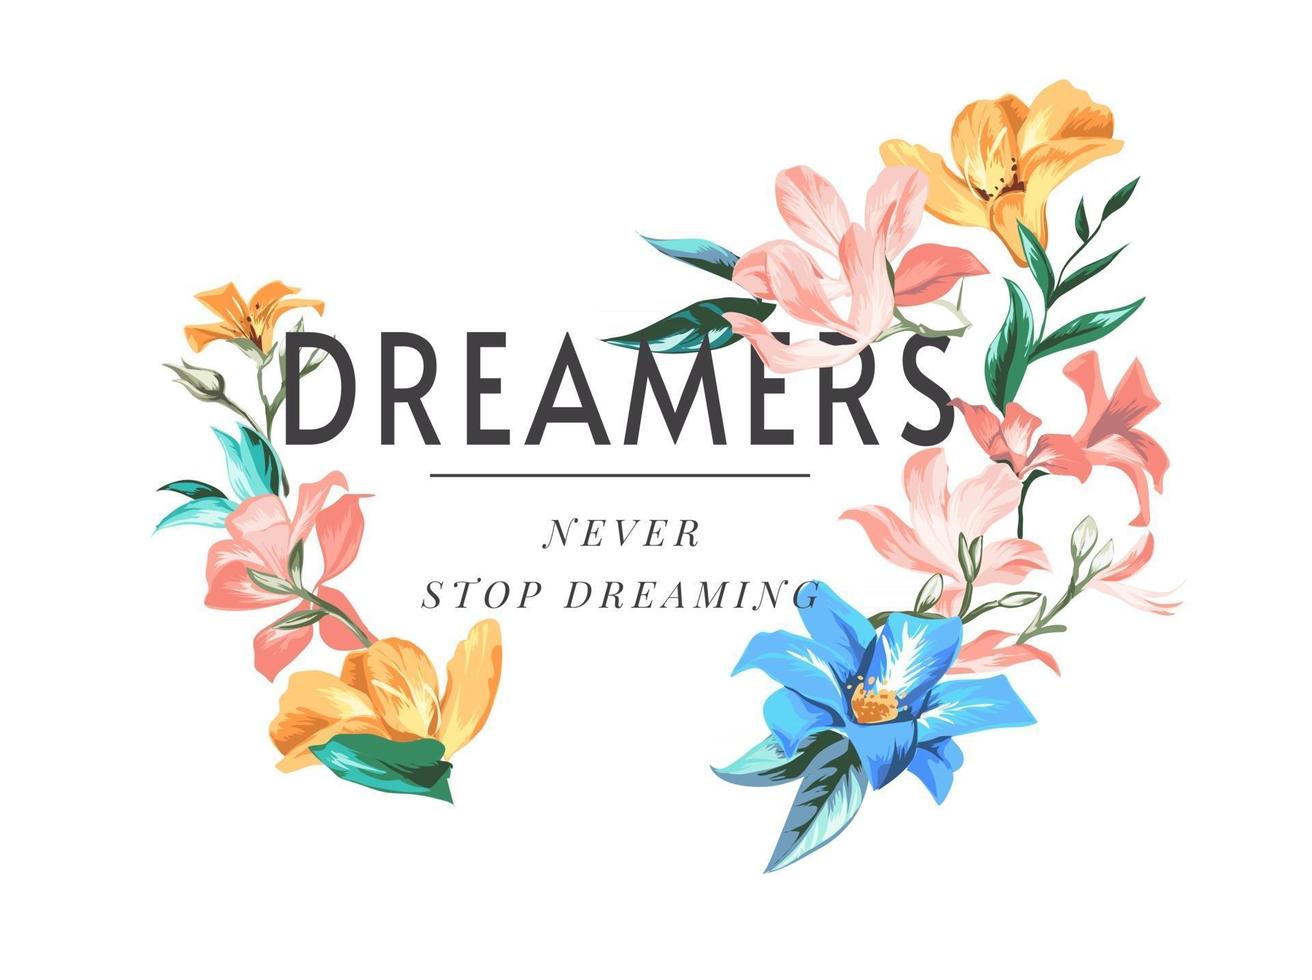 slogan de rêveurs avec illustration de fleurs colorées vecteur